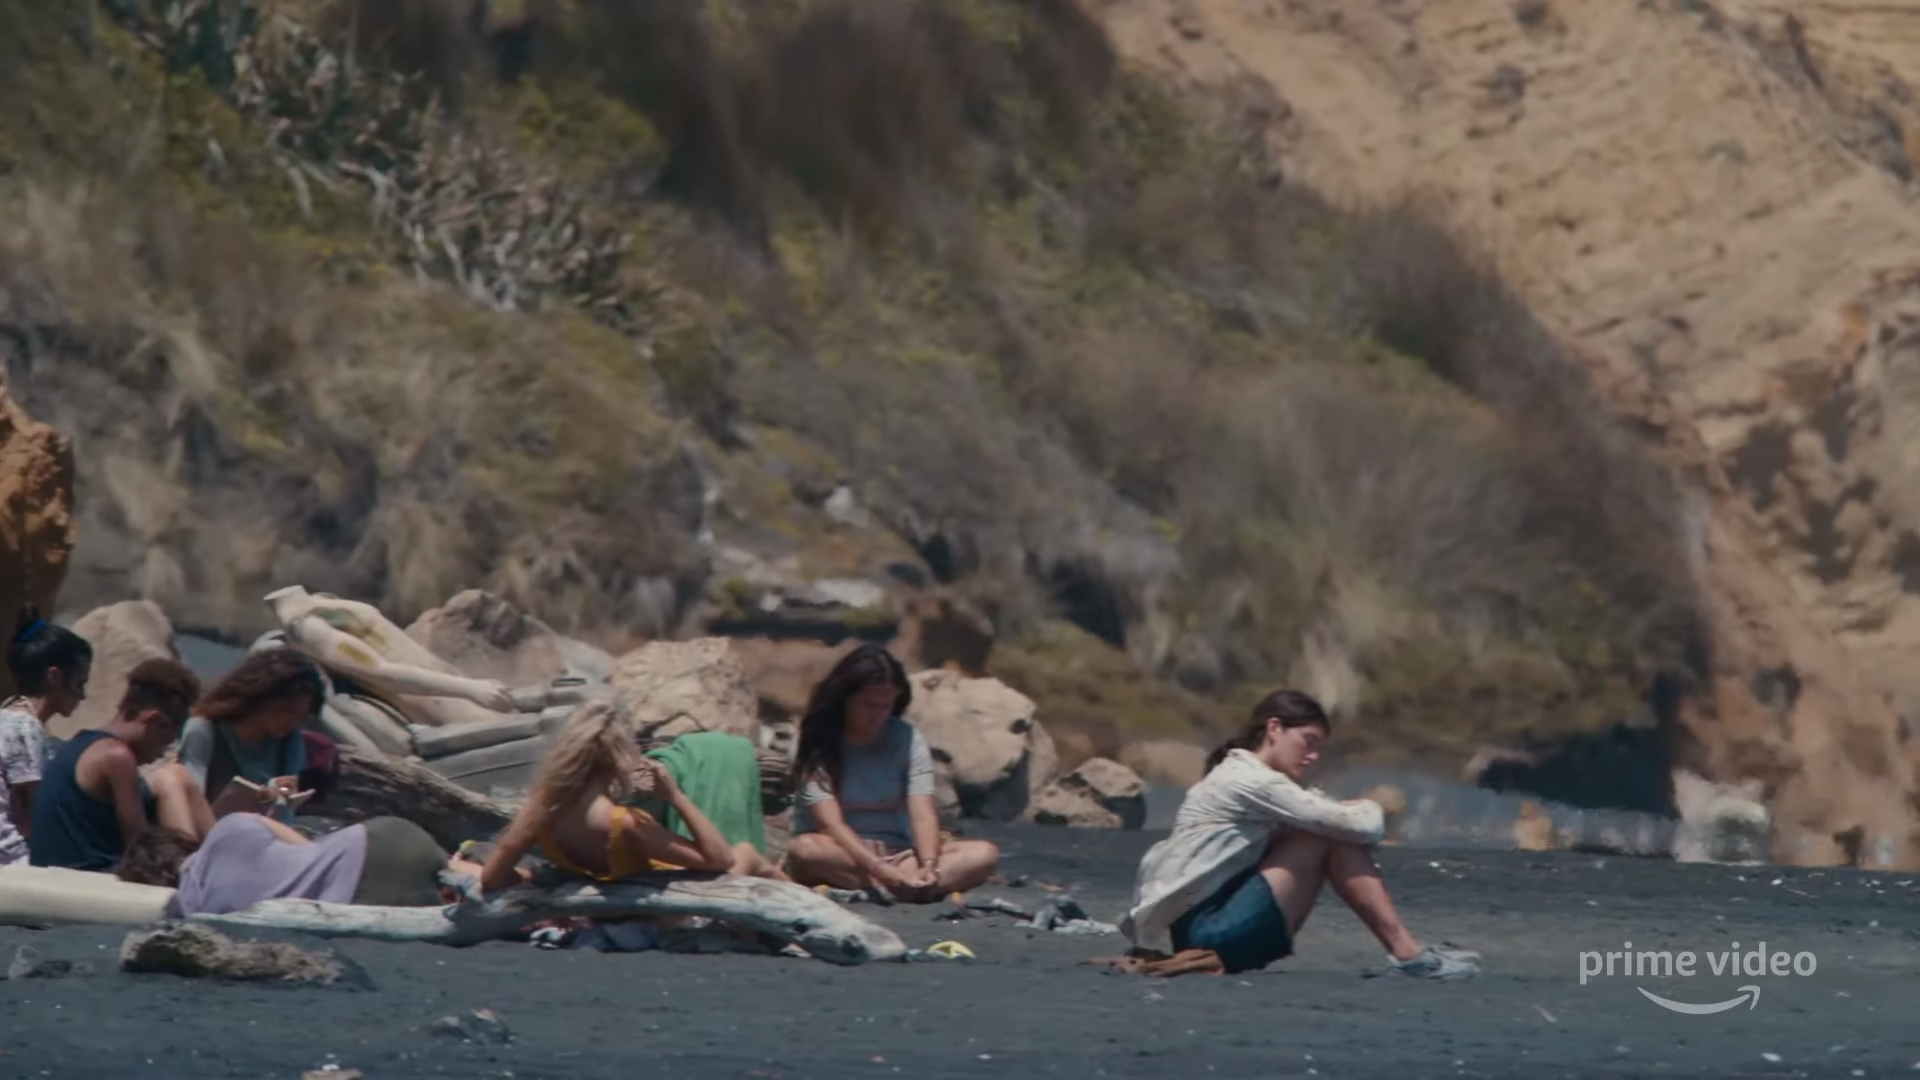 The Wilds”: grupo de garotas tenta sobreviver em uma ilha deserta em  trailer de série do Prime Video